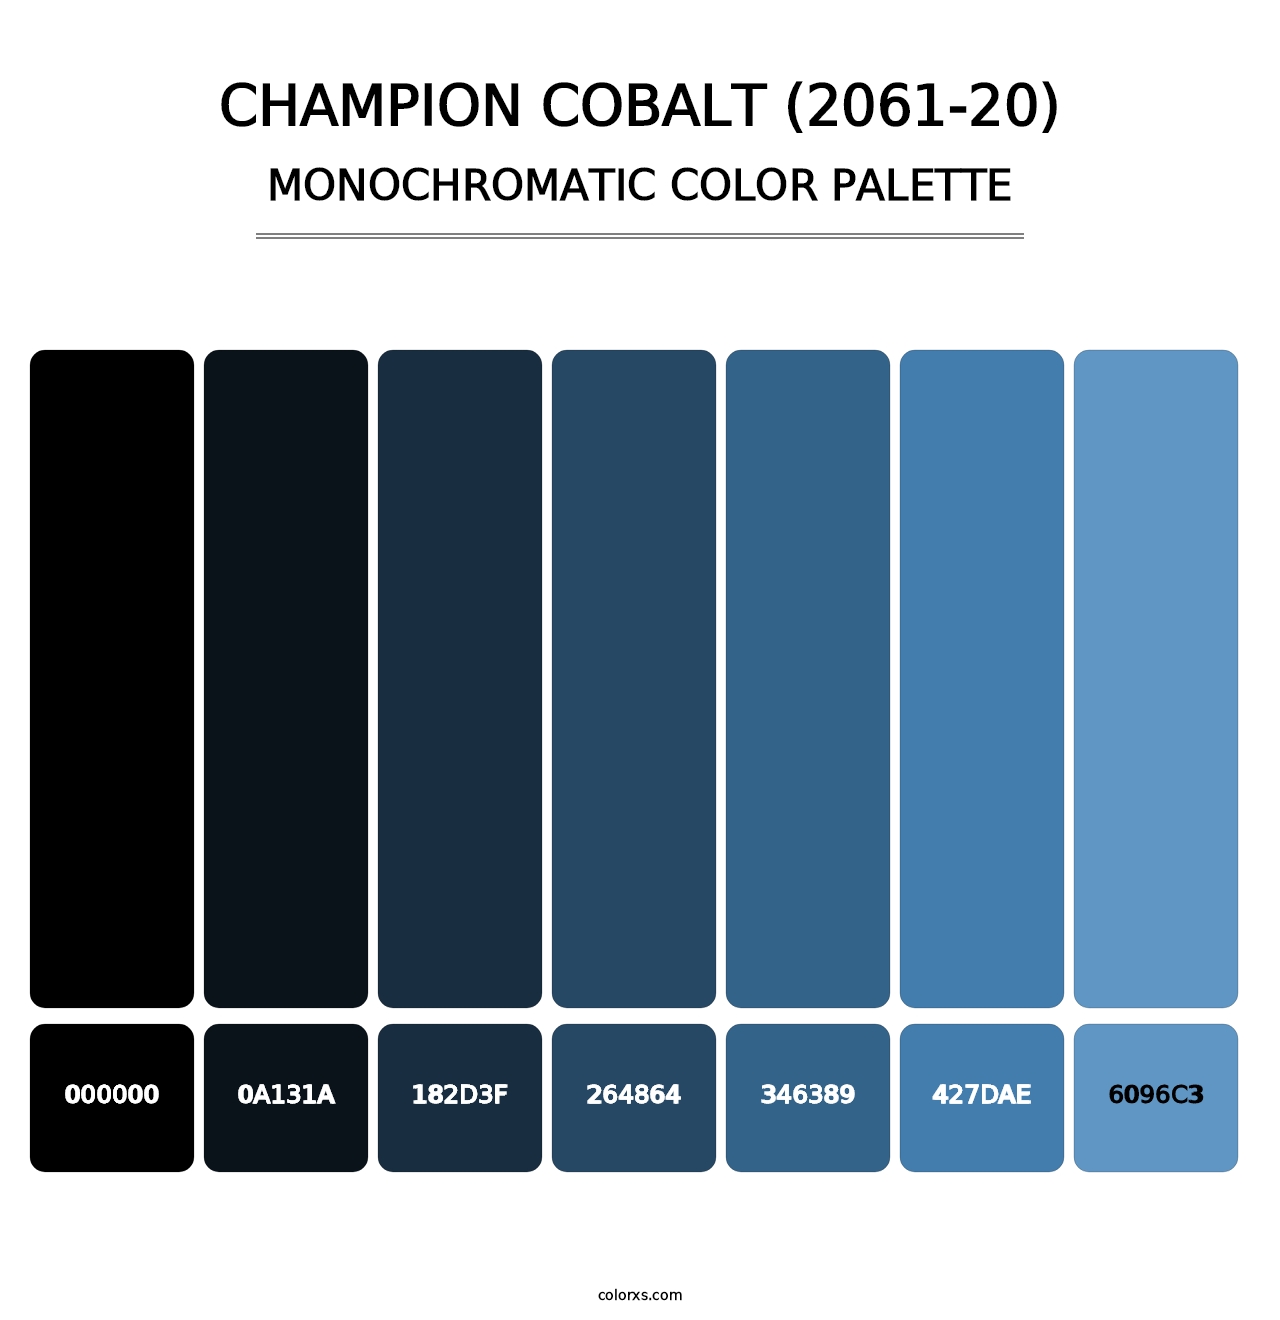 Champion Cobalt (2061-20) - Monochromatic Color Palette